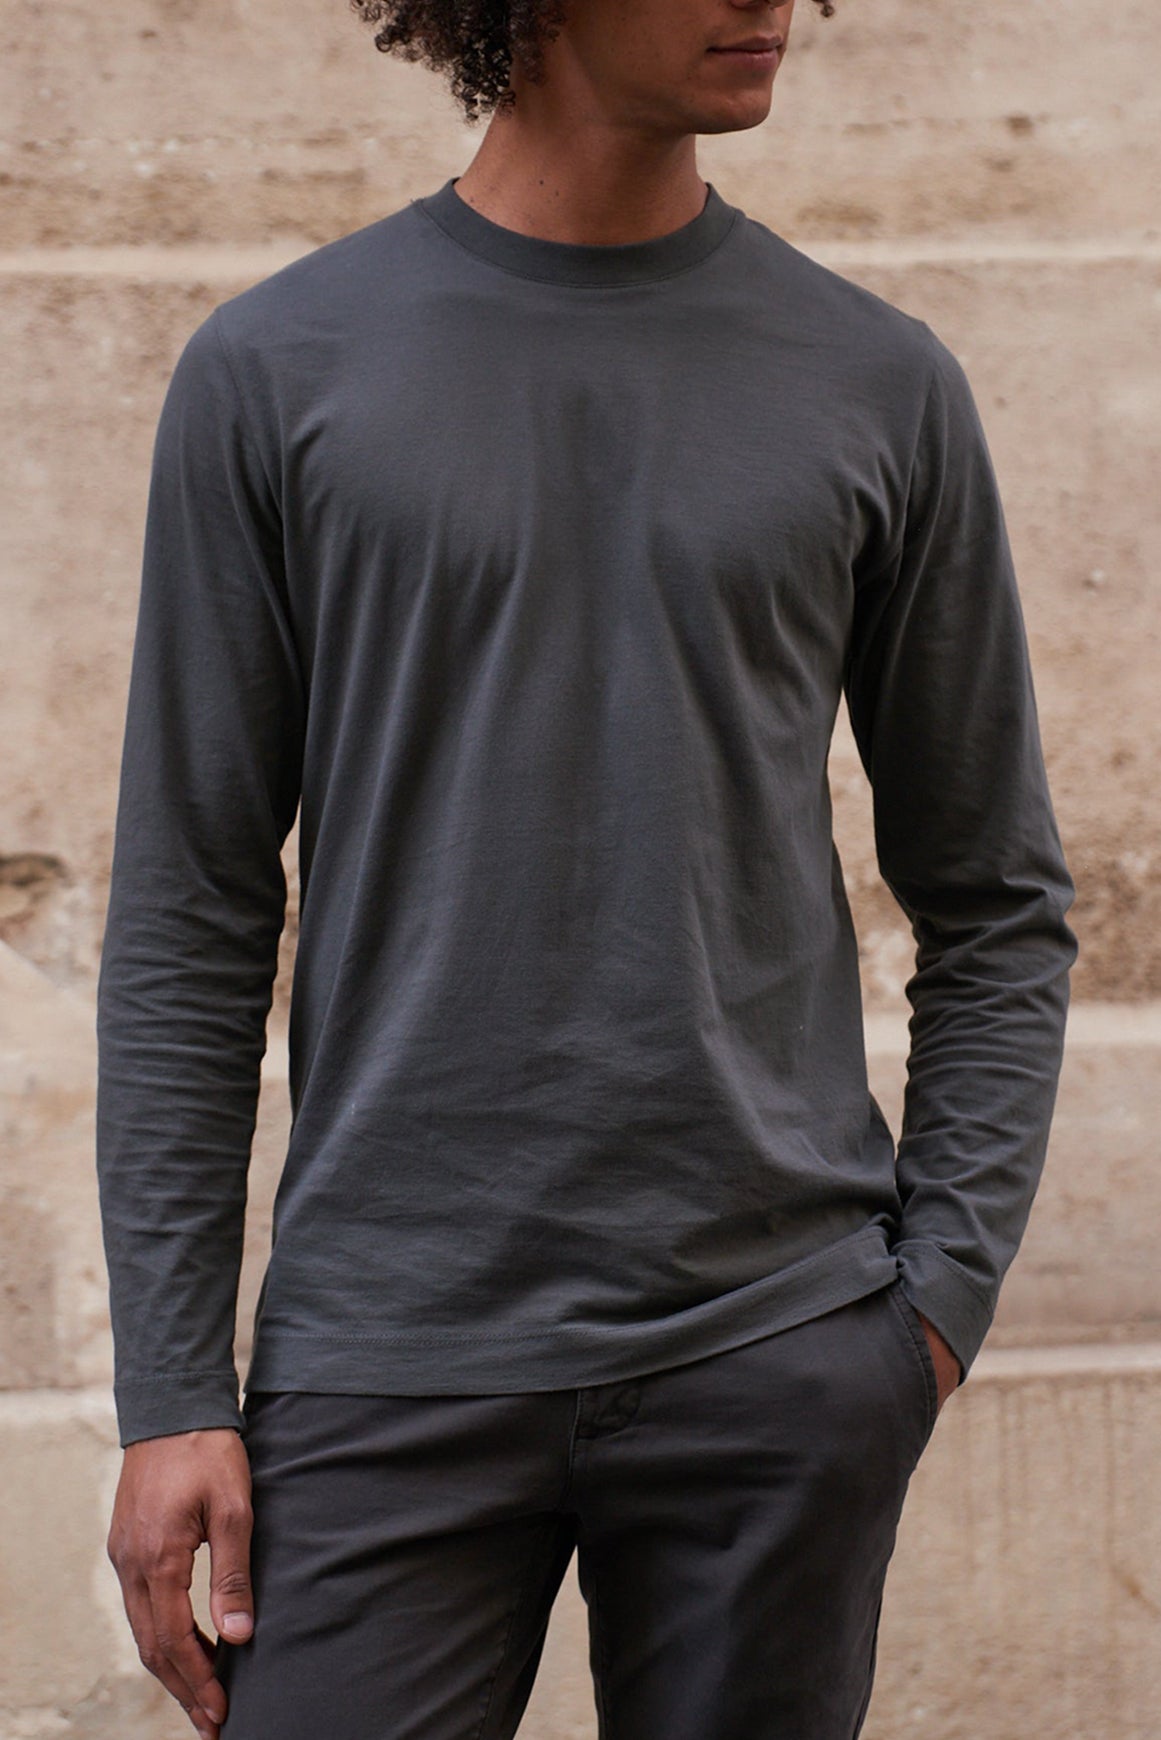 Tee shirt thermique de randonnée à manches longues Eleonore - Dream KARI  TRAA - Sports Aventure